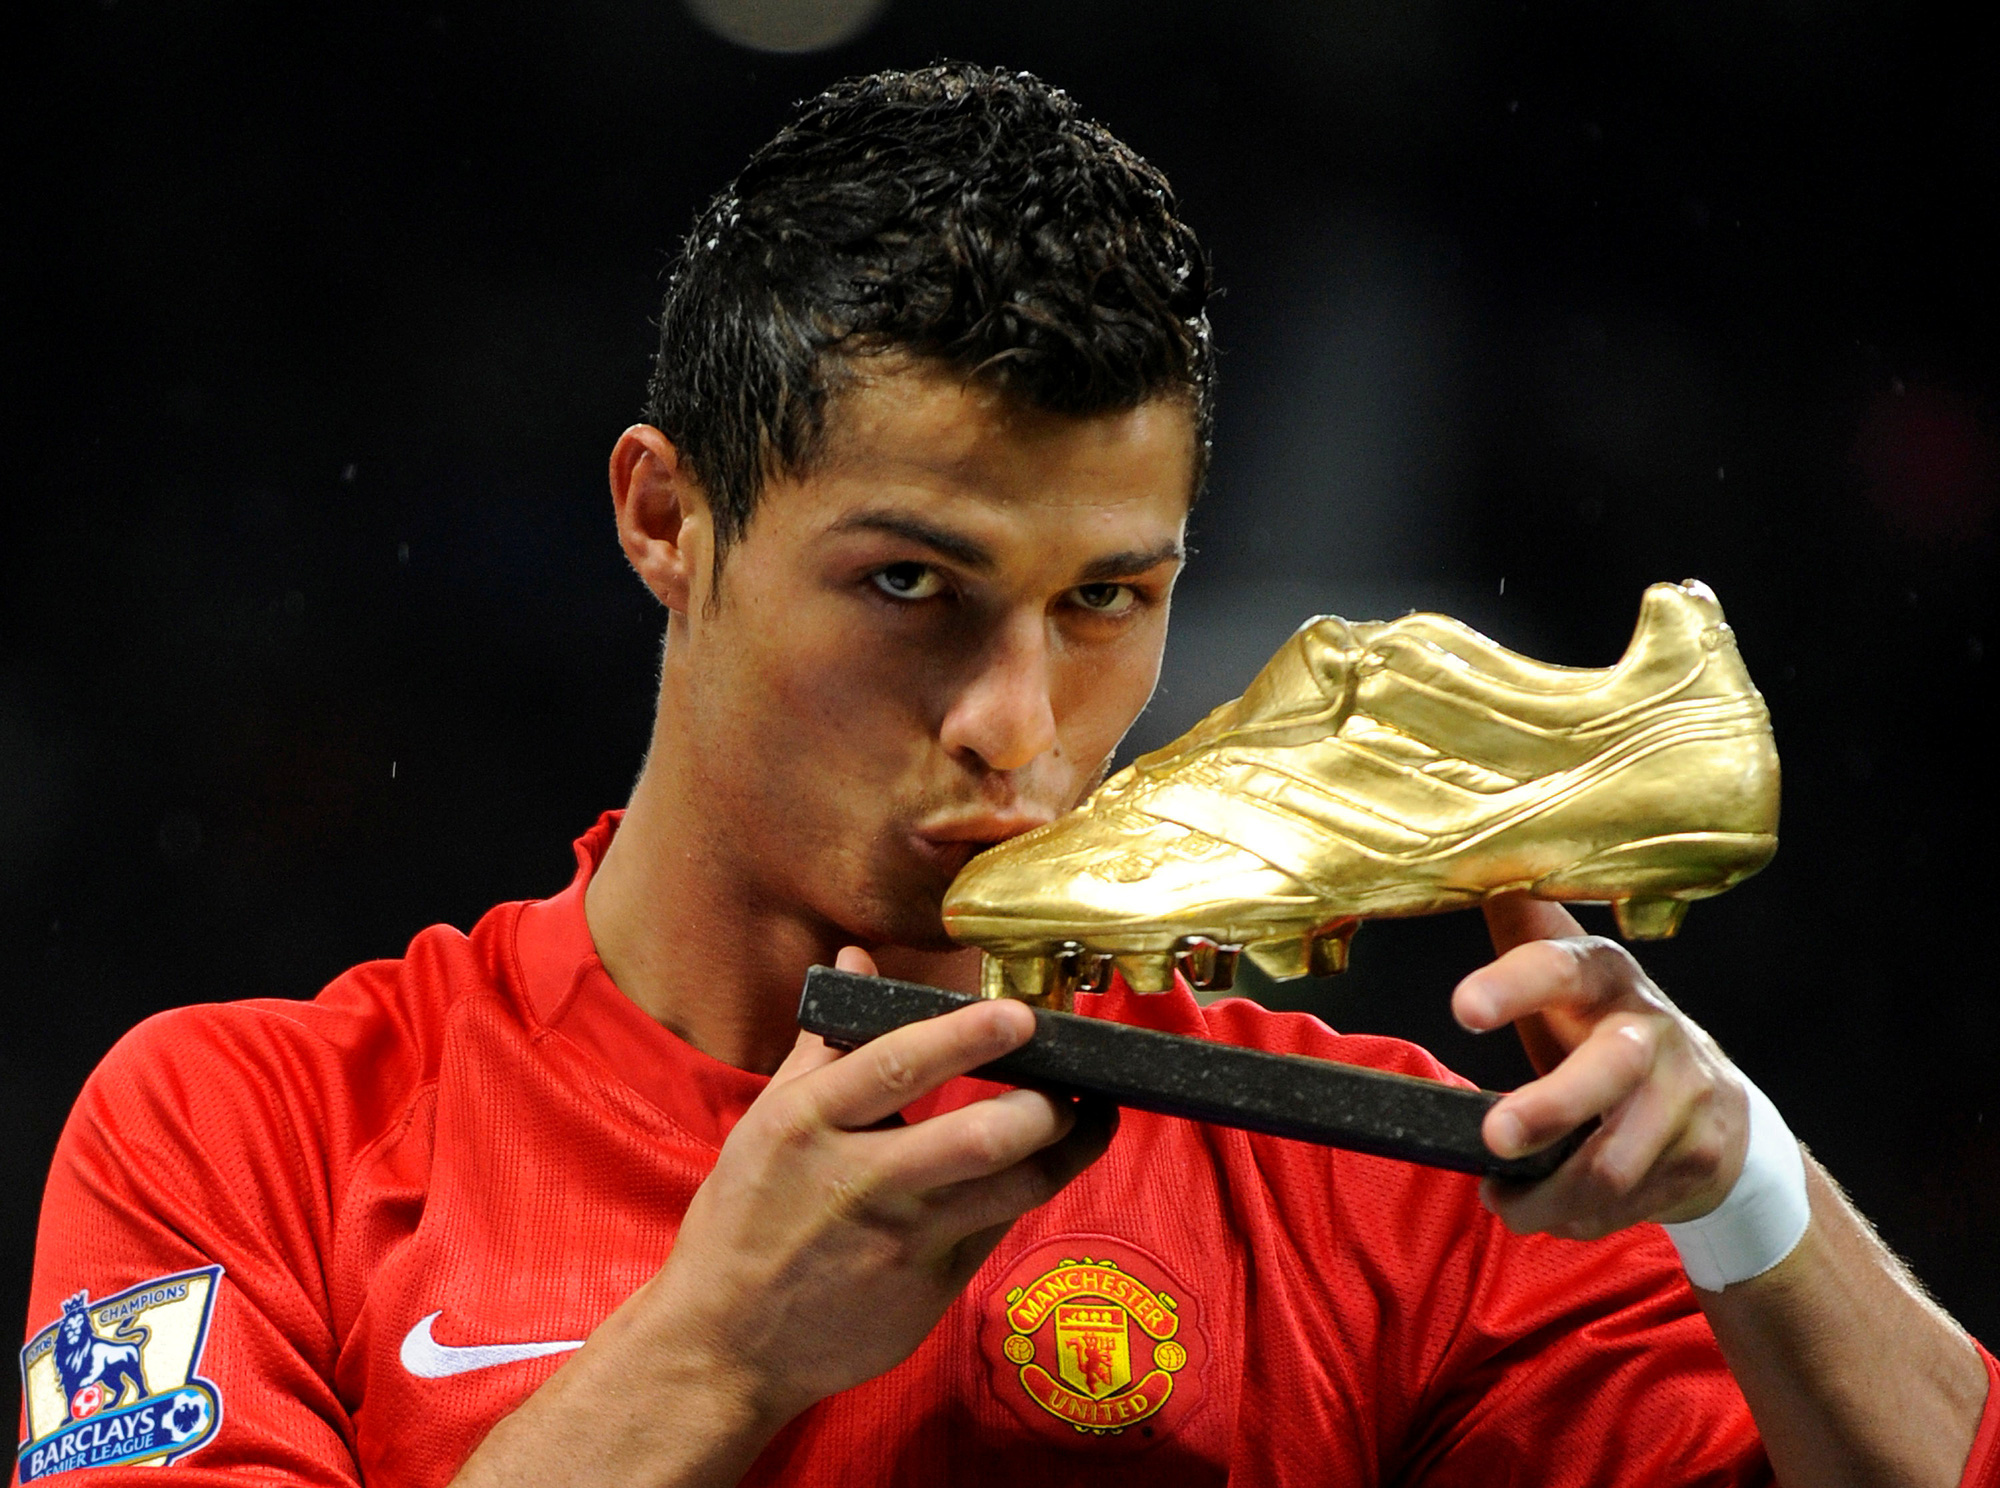 Manchester United là nơi chắp cánh giúp Ronaldo trở thành một trong những cầu thủ hay nhất thế giới - Ảnh: @REUTERS.